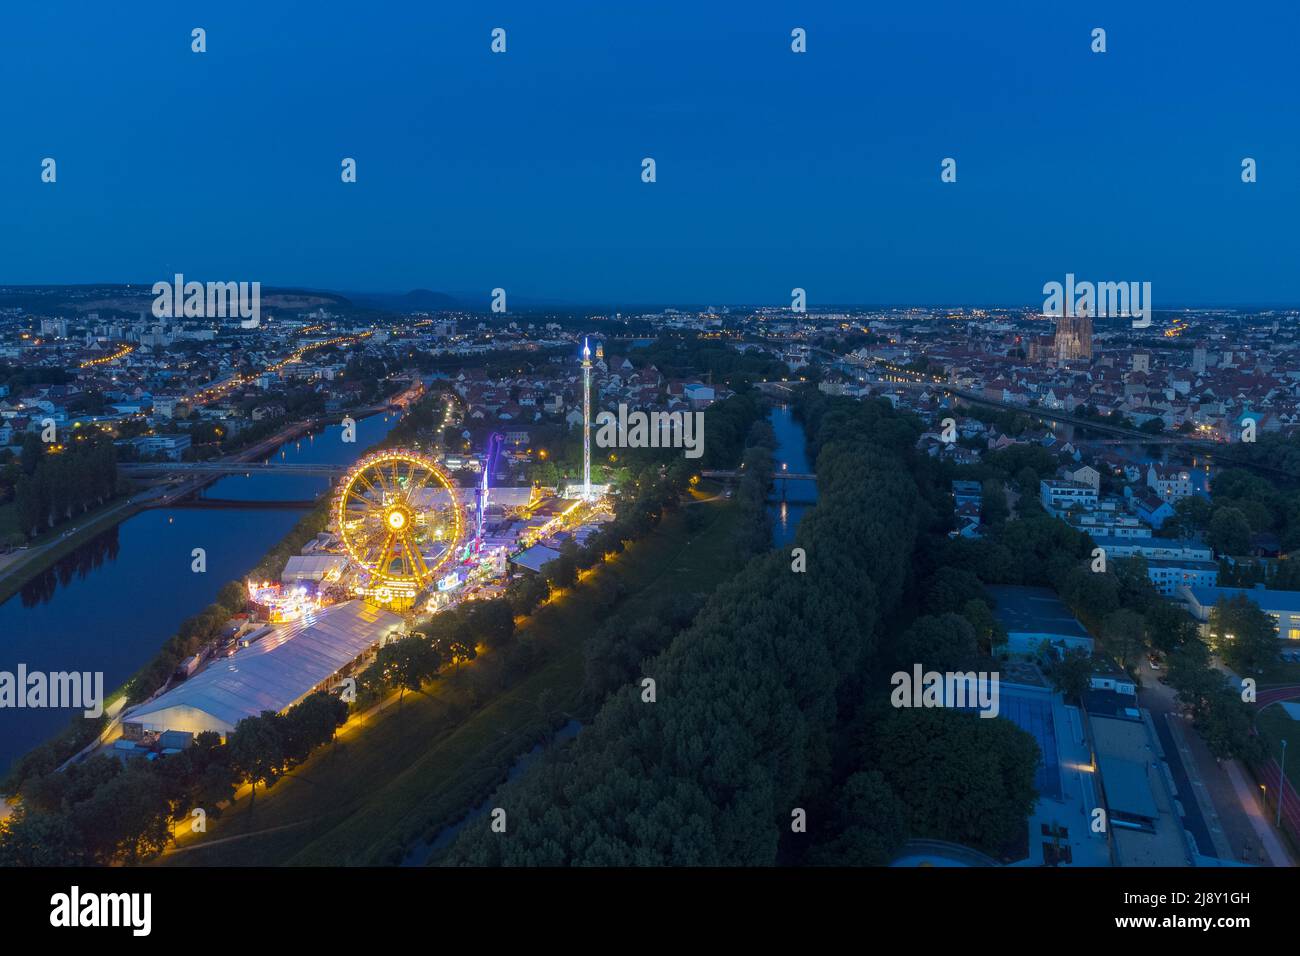 Vista aérea de la feria Maidult en Regensburg, Baviera, Alemania con rueda de ferris y tiendas de cerveza por la noche Foto de stock